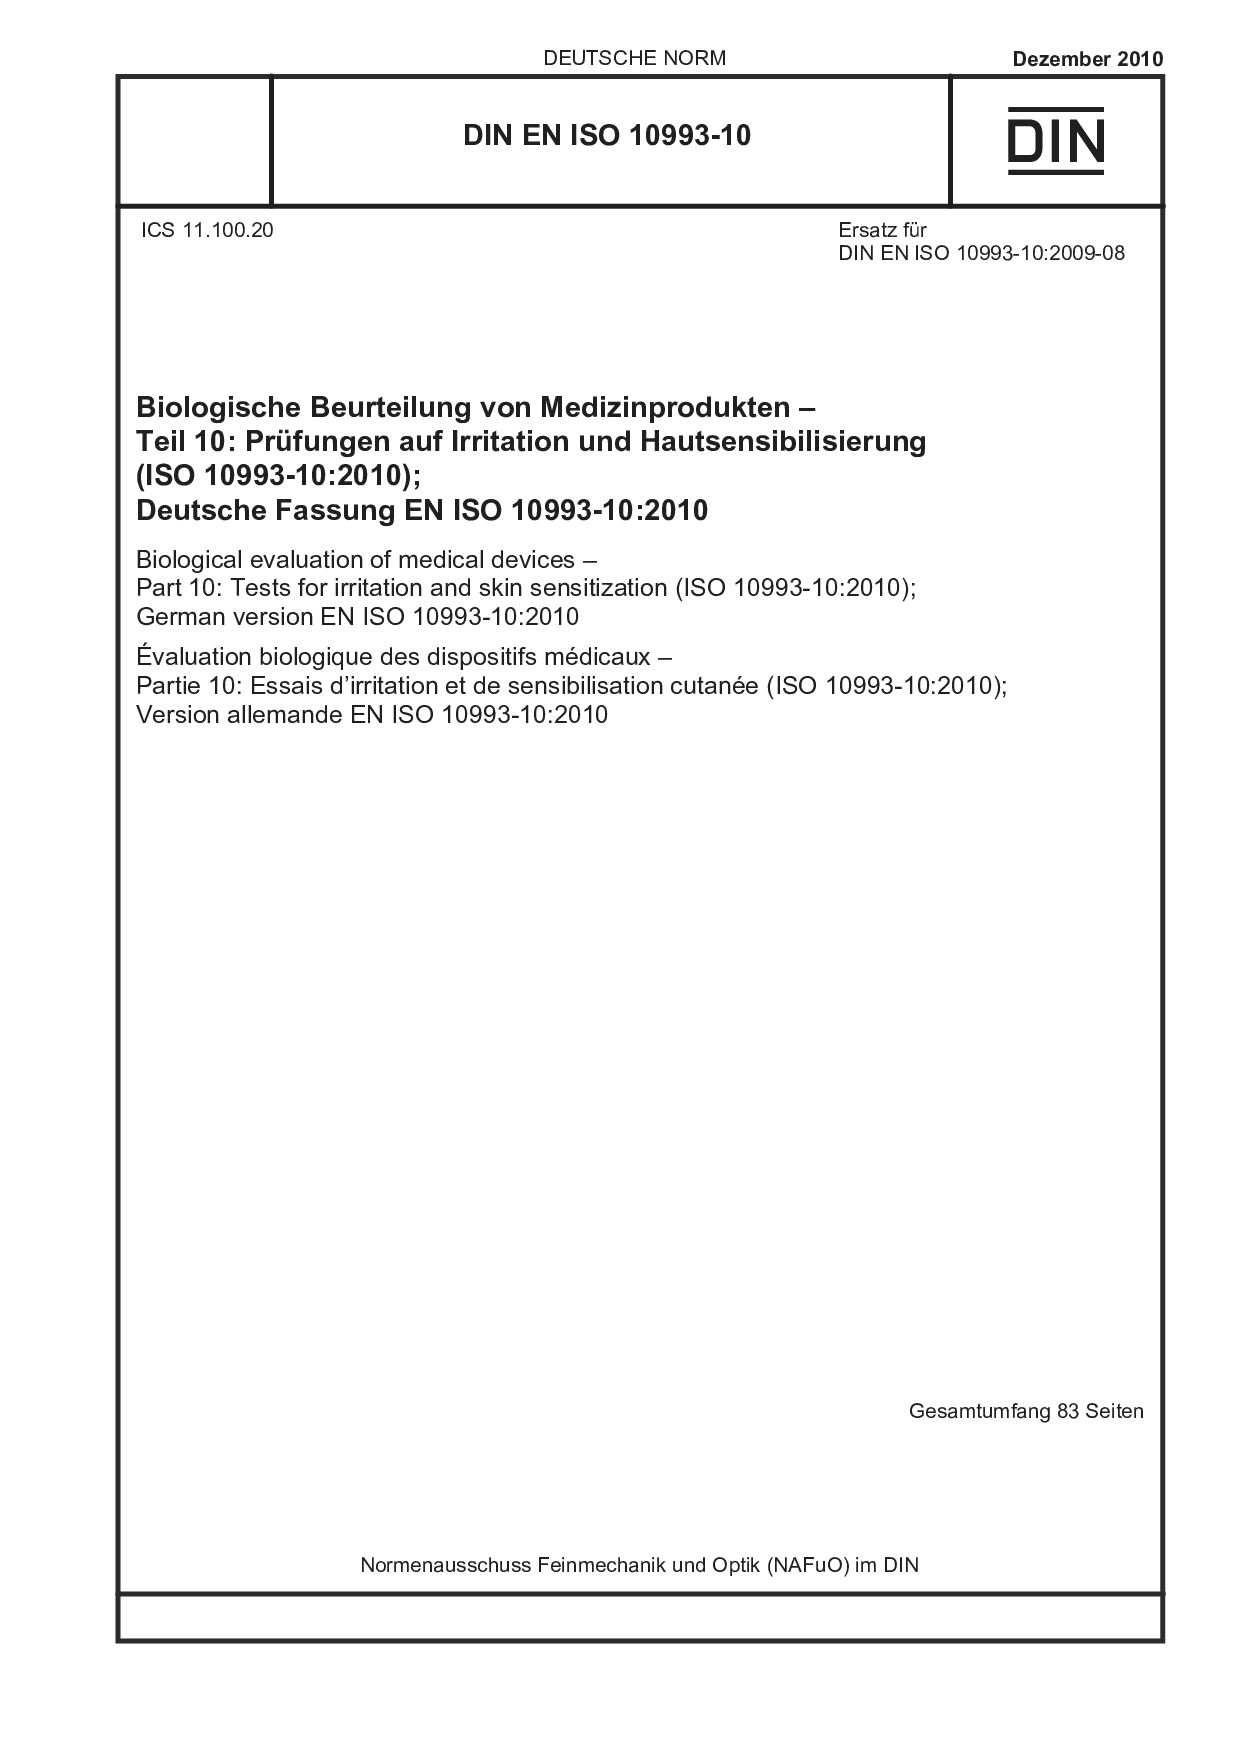 DIN EN ISO 10993-10:2010封面图